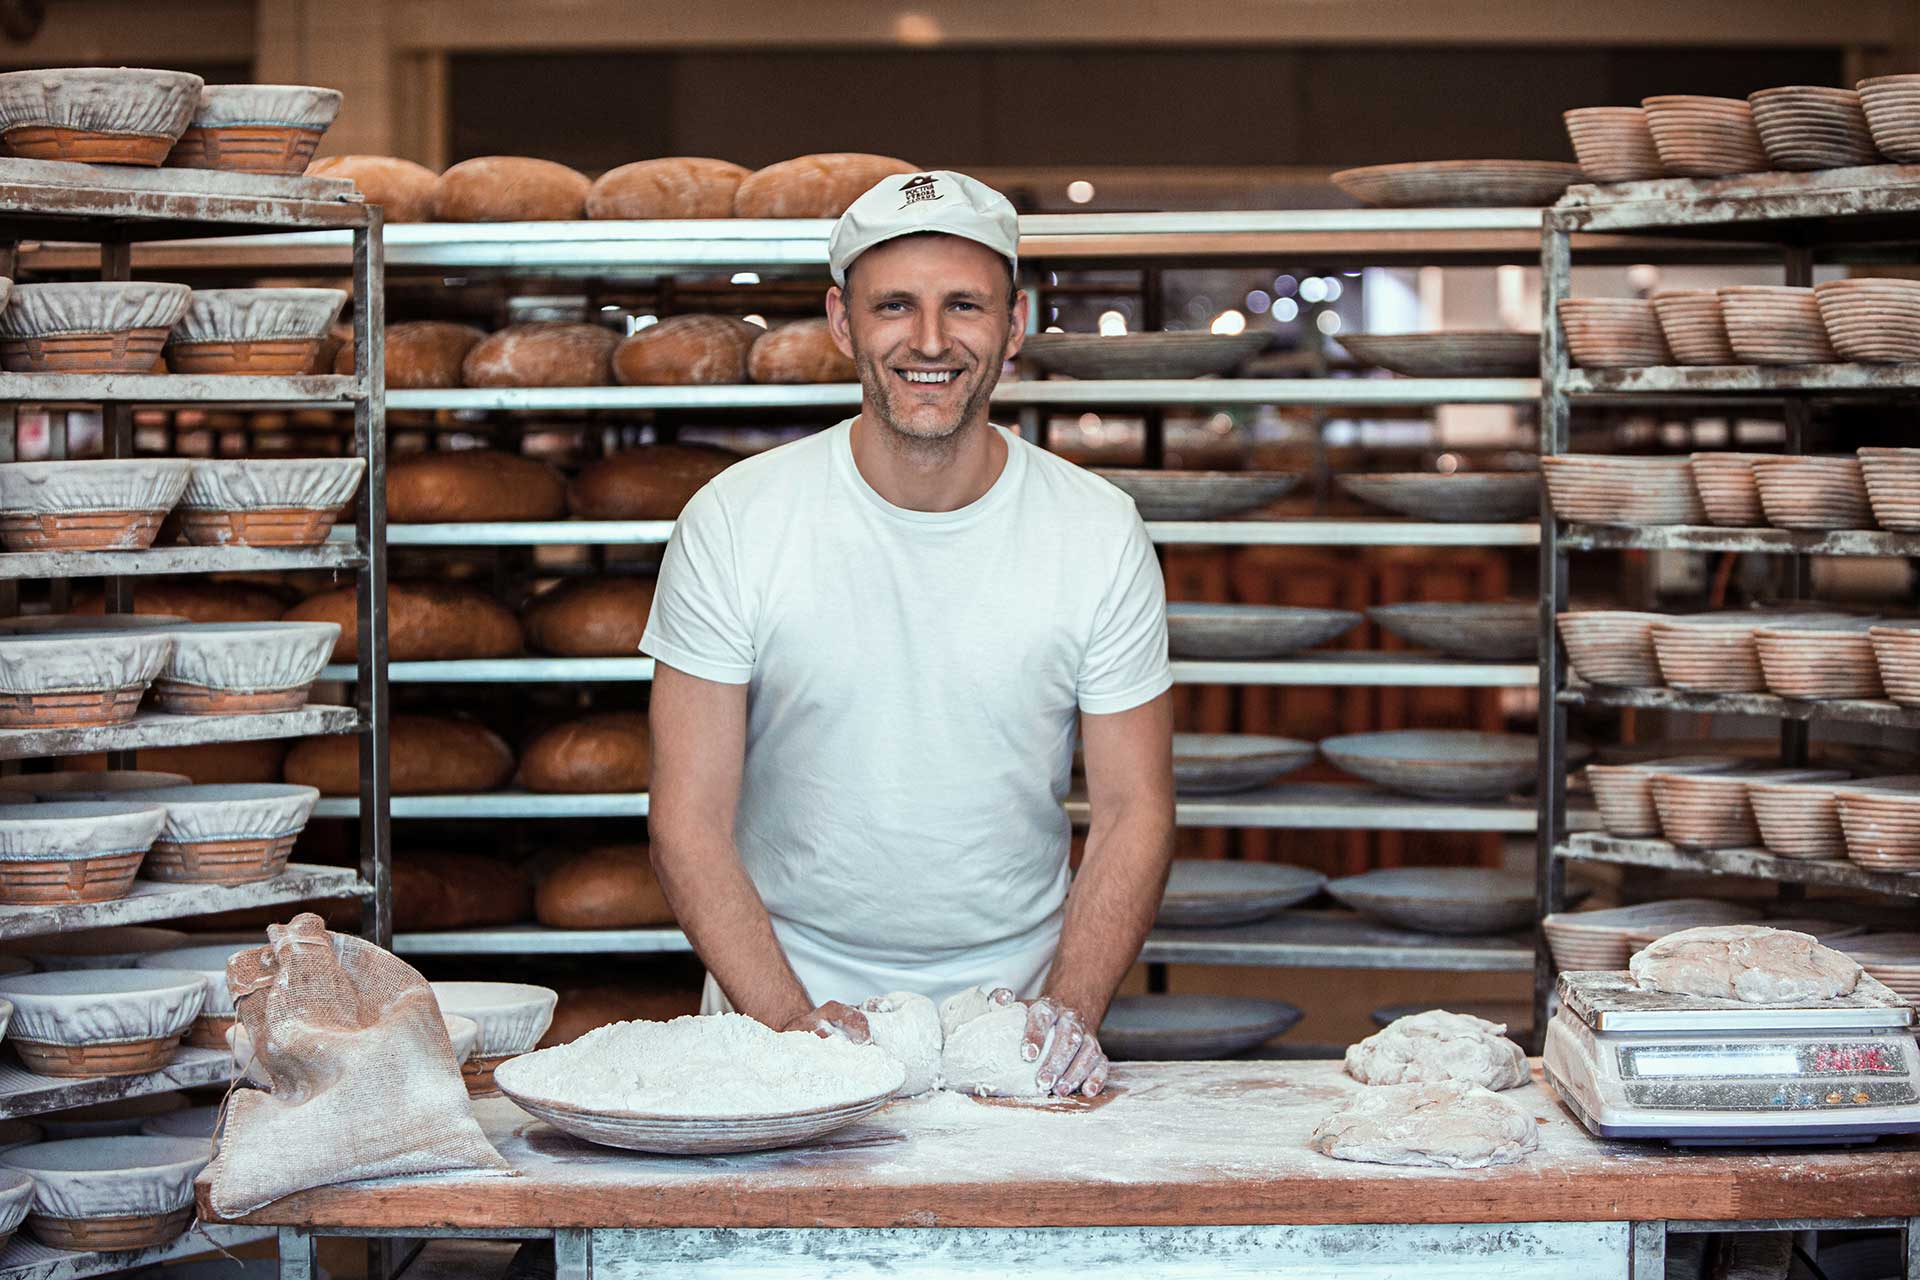 Chleba je základ pekárny, podle něj poznáte dobrého pekaře